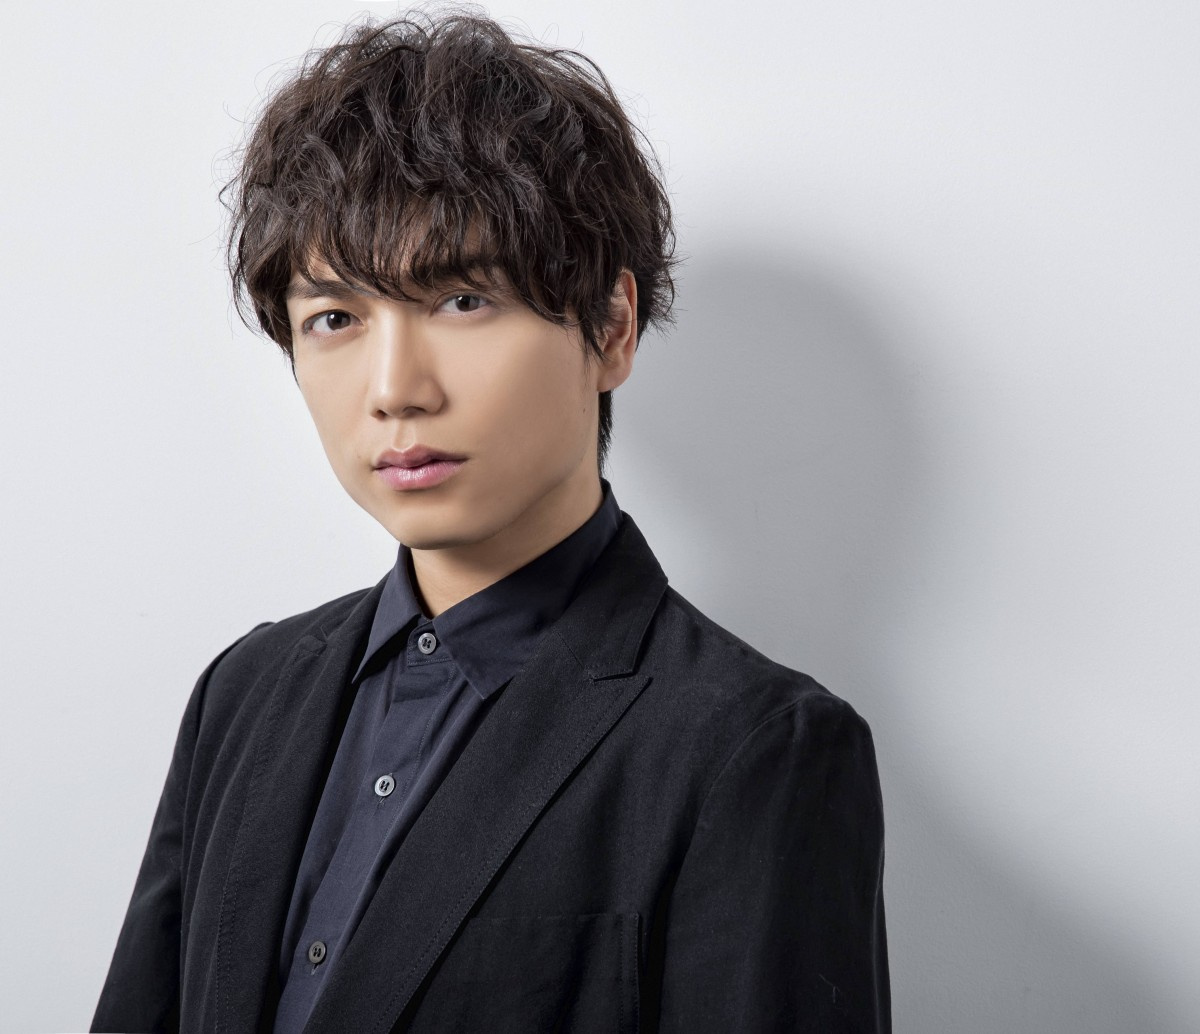 山崎育三郎 新曲は 恩師 森山直太朗が提供 朝ドラのメイク室で意気投合 Oricon News